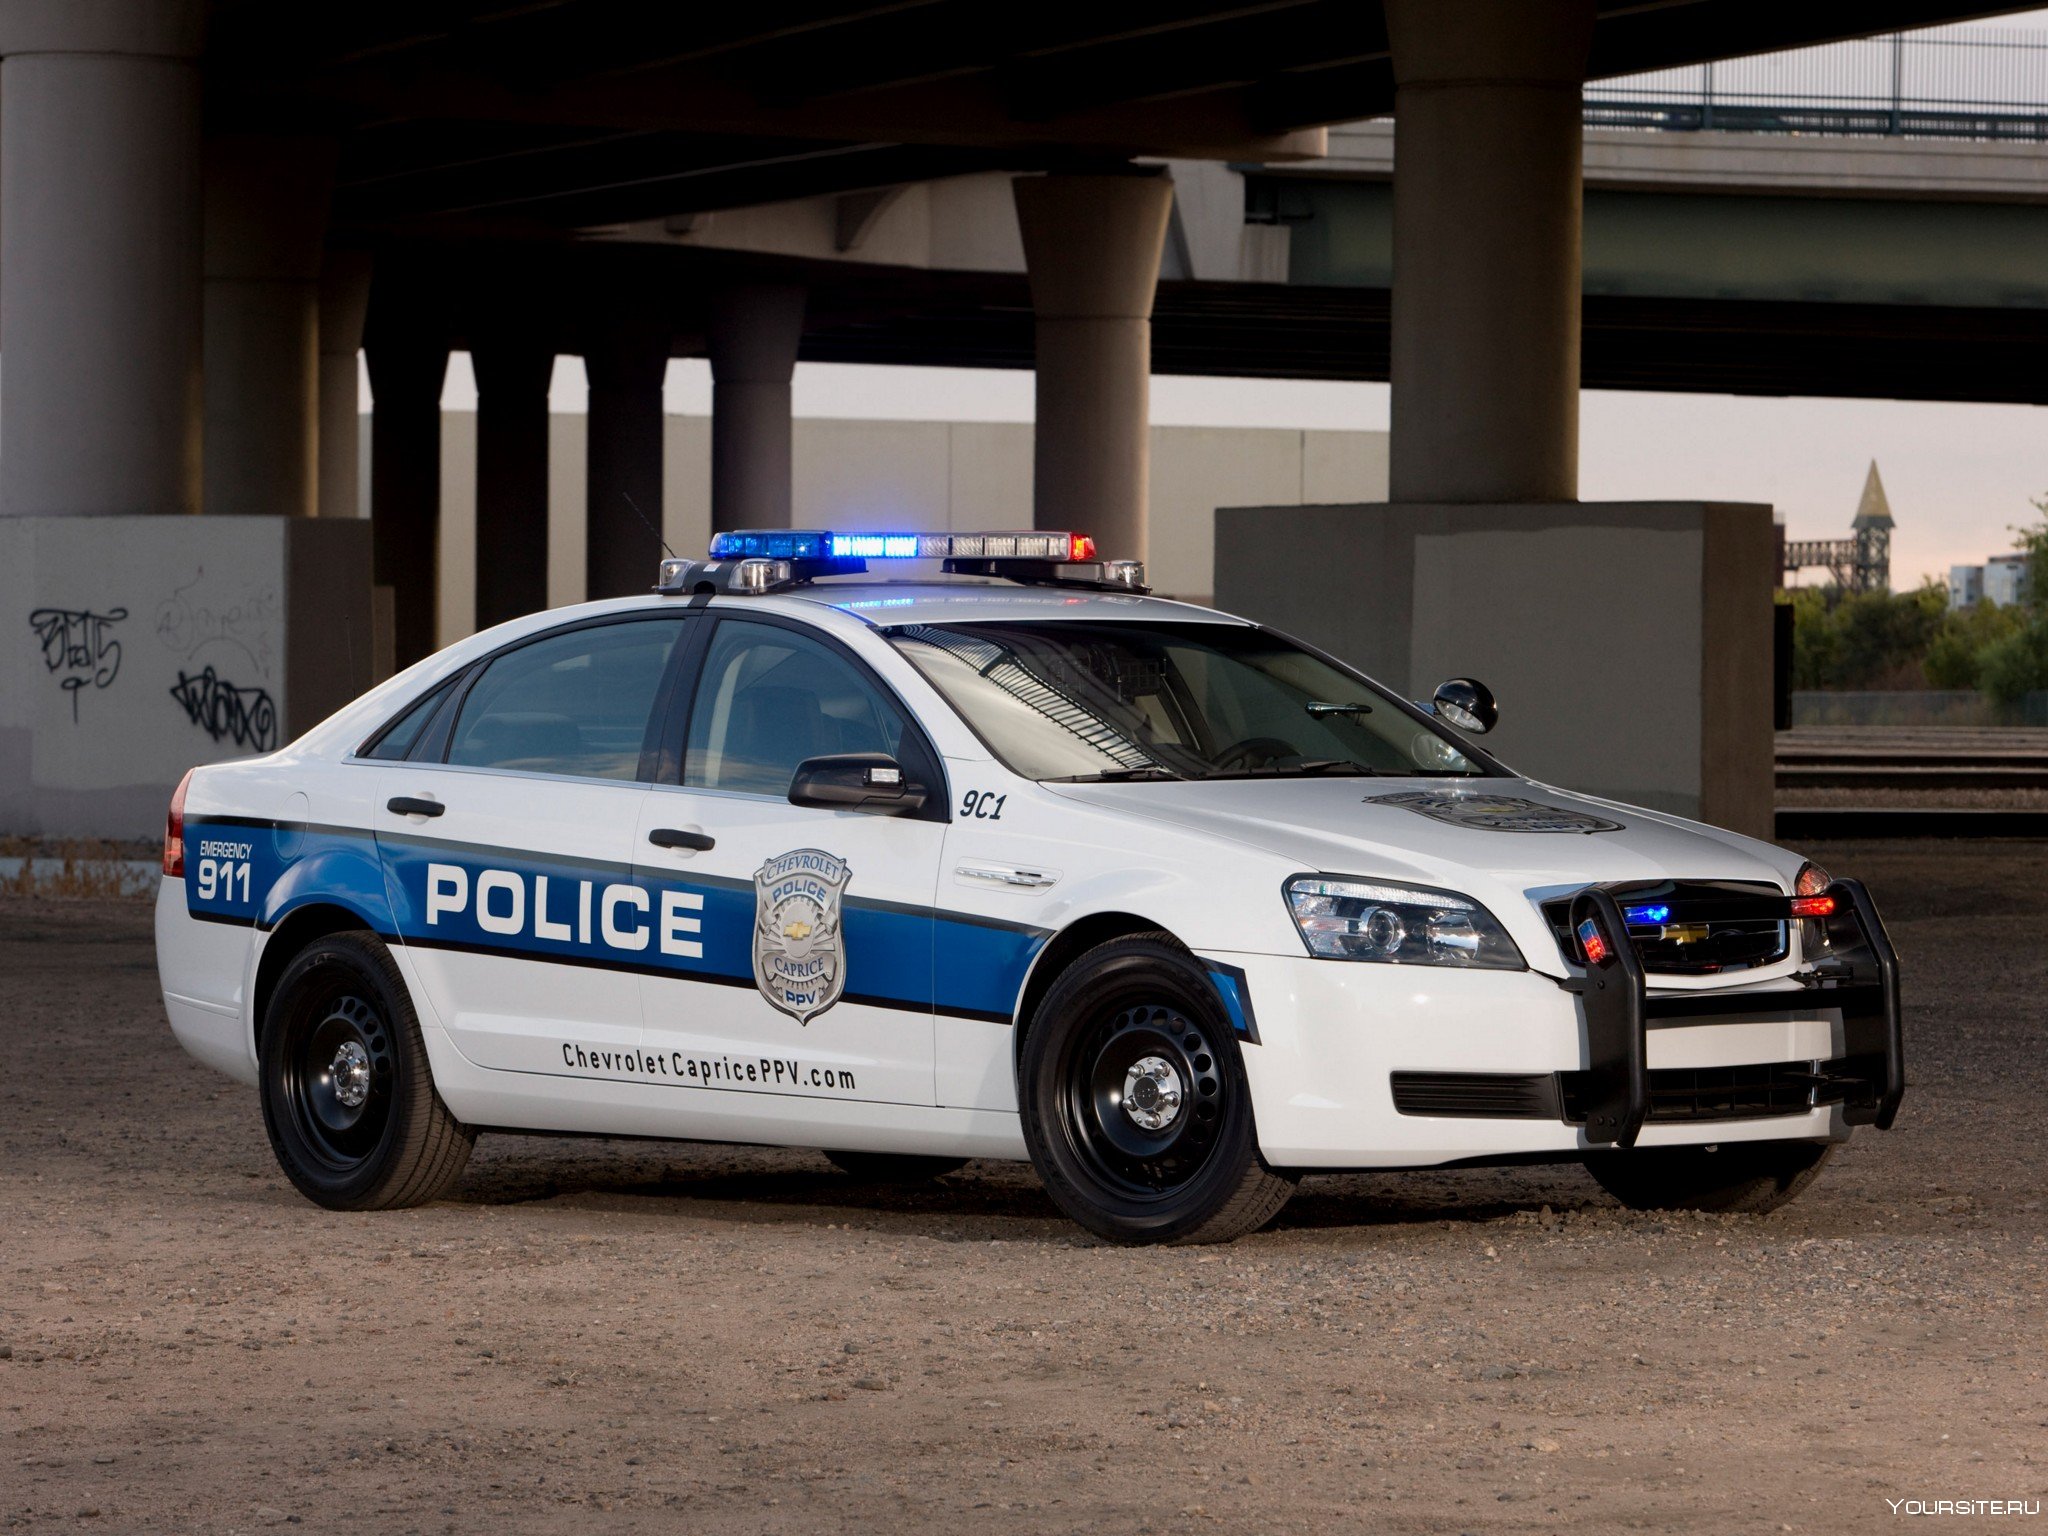 Нужны полицейские машины. Chevrolet Caprice 9c1 Police.